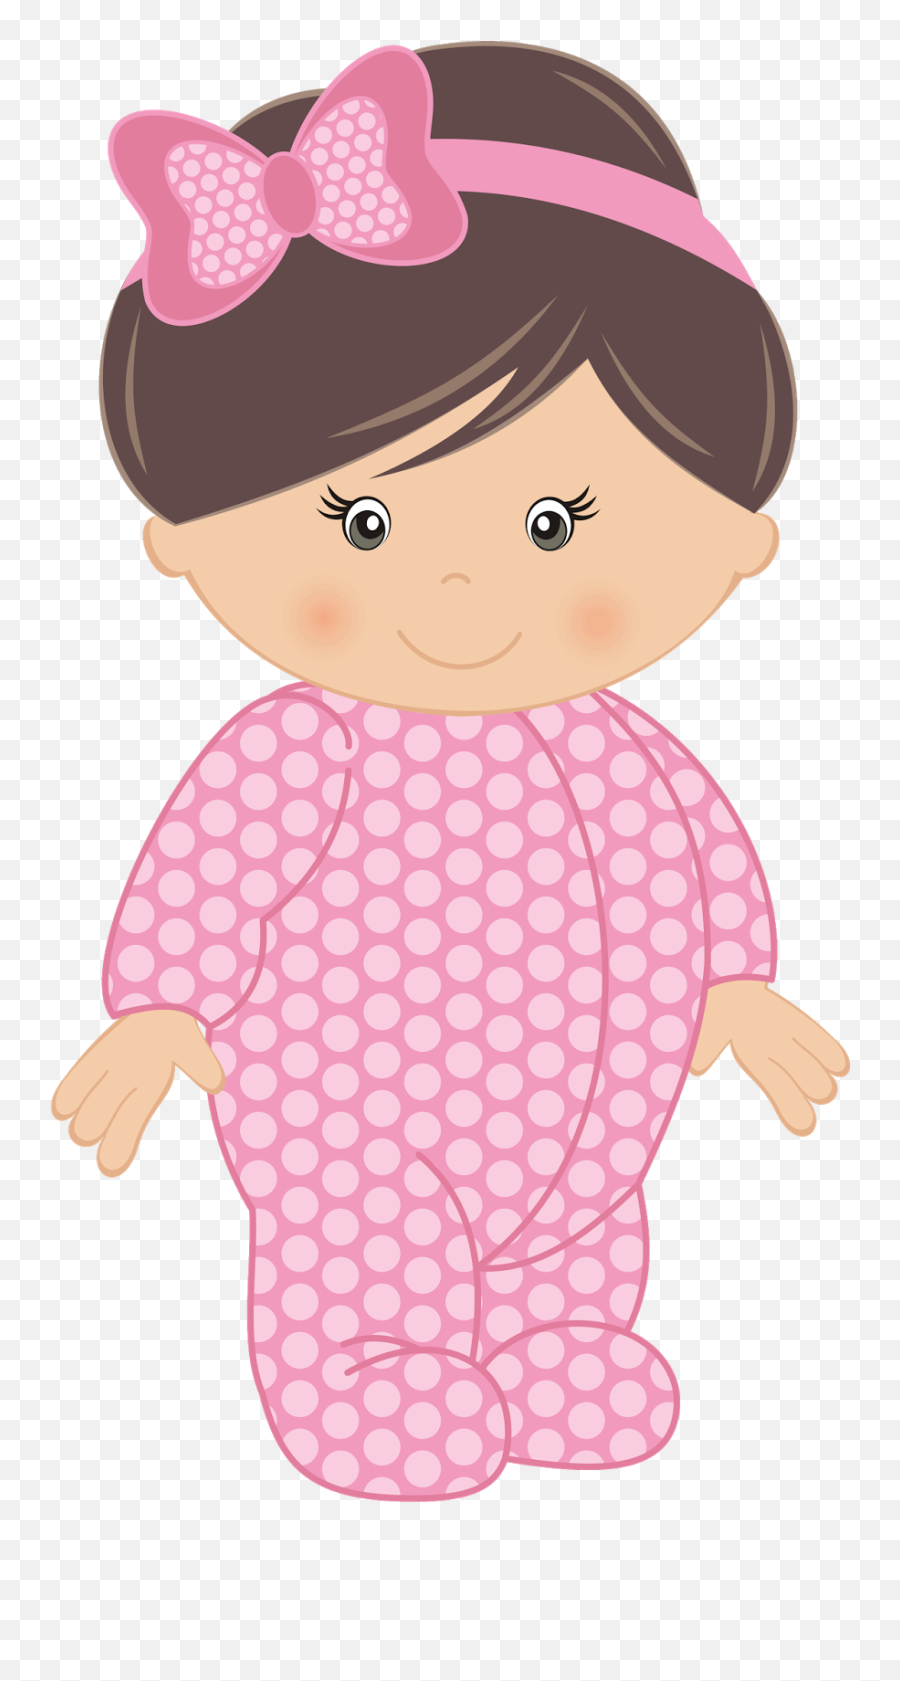 Baby Shower Souvenirs - Topo De Bolo Chá De Bebe Menina Emoji,Baby Girl Emoji Transparent Background